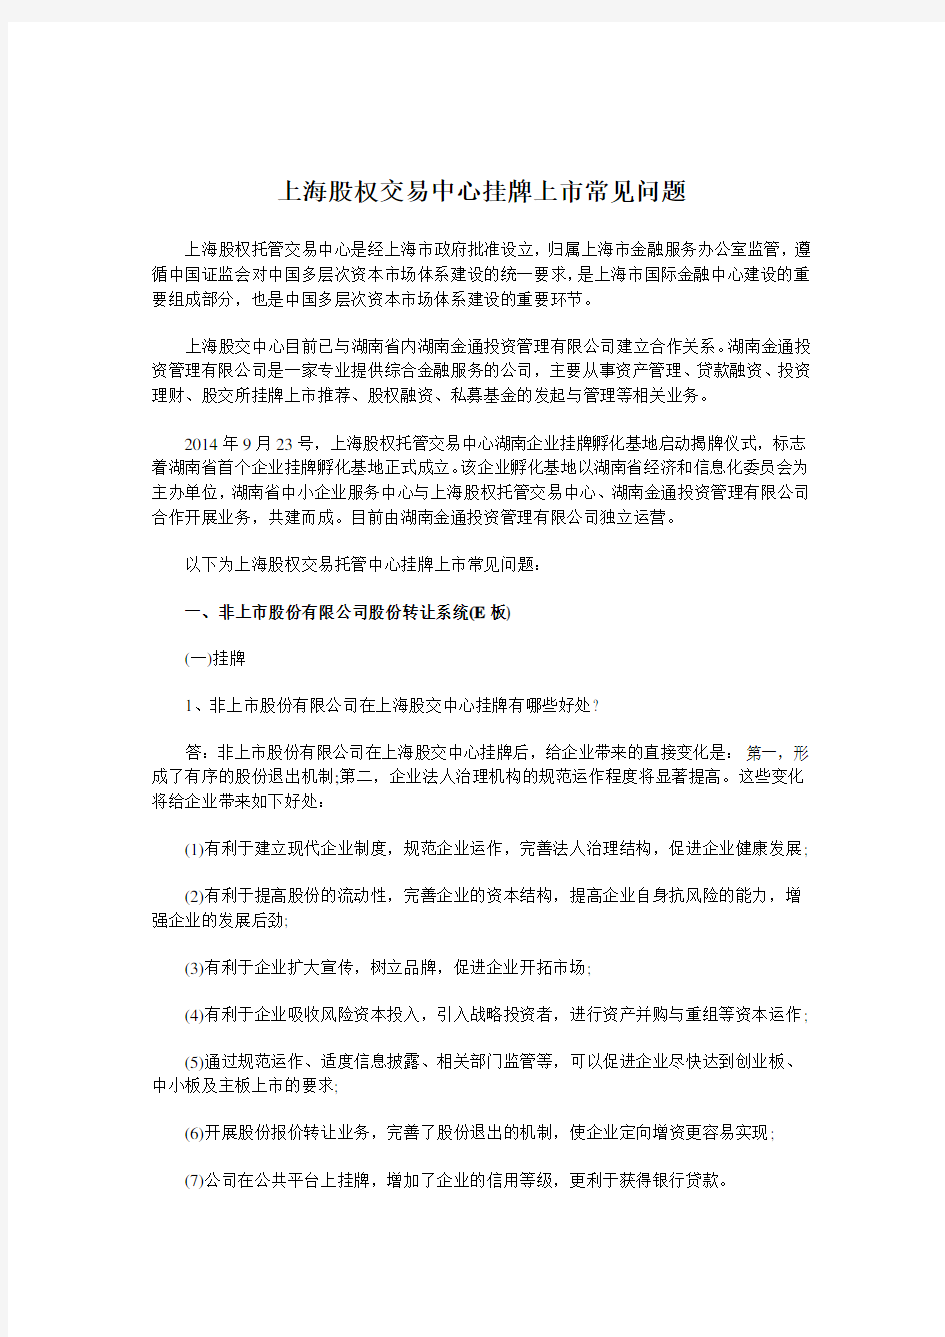 上海股权交易中心挂牌上市常见问题